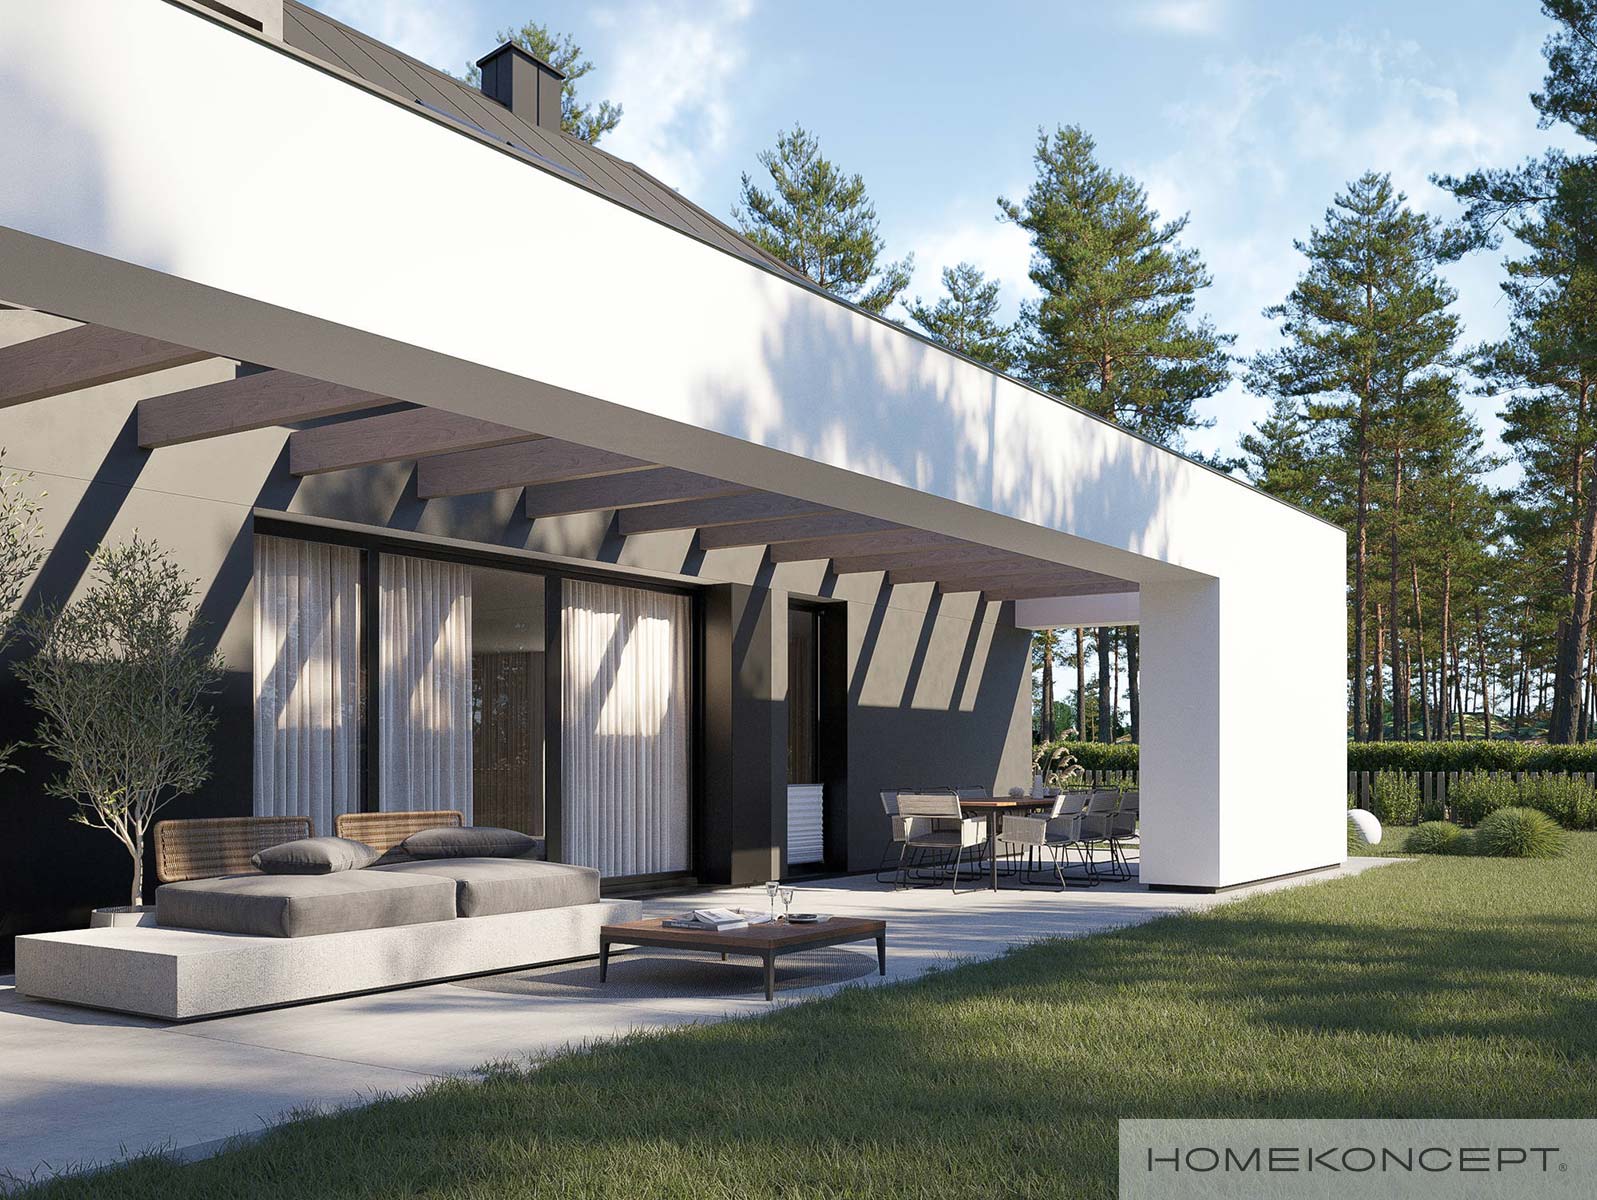 Projekt domu jednorodzinnego homekoncept 98 - widok na drzwi tarasowe hs.